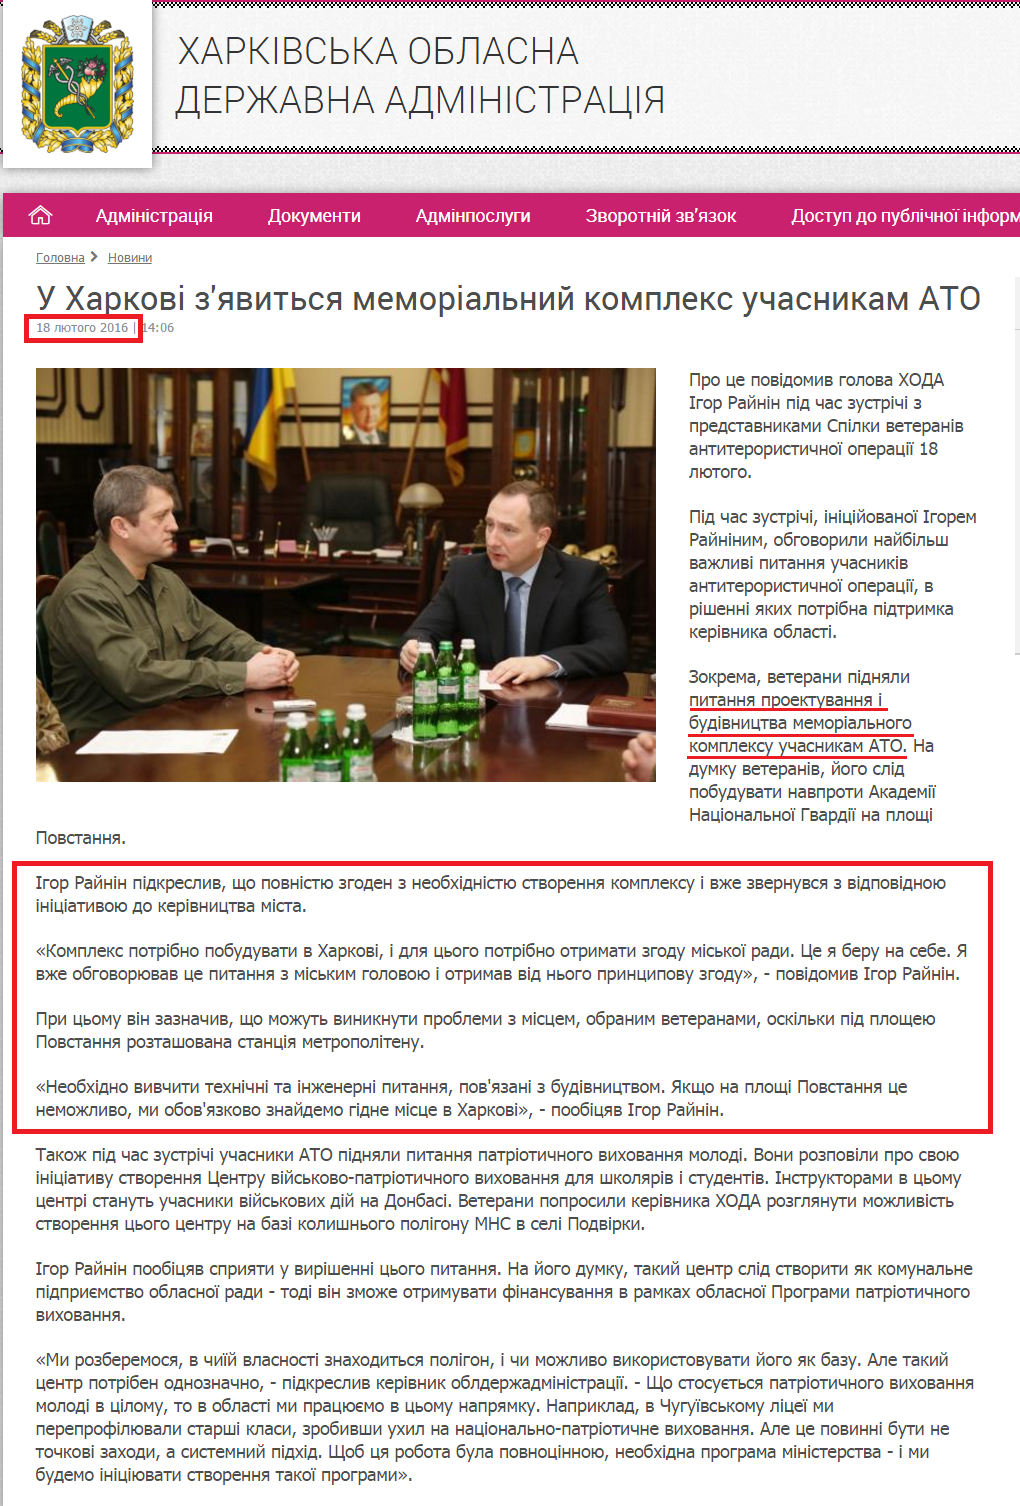 http://kharkivoda.gov.ua/news/79155